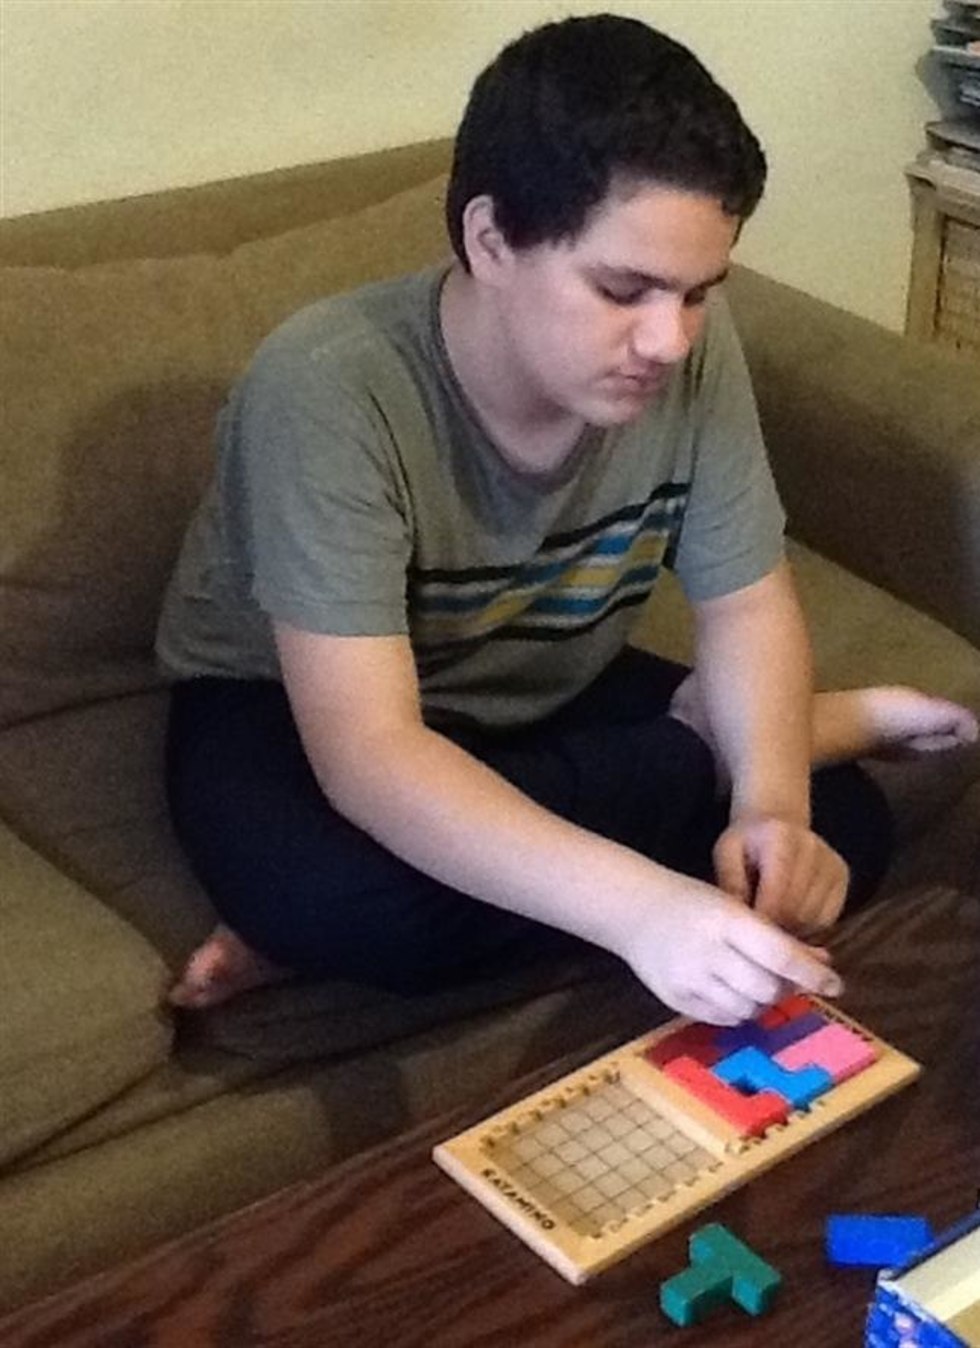 איל שחל, נער אוטיסט, משחק במשחק לוח בסלון (צילום: באדיבות המשפחה)